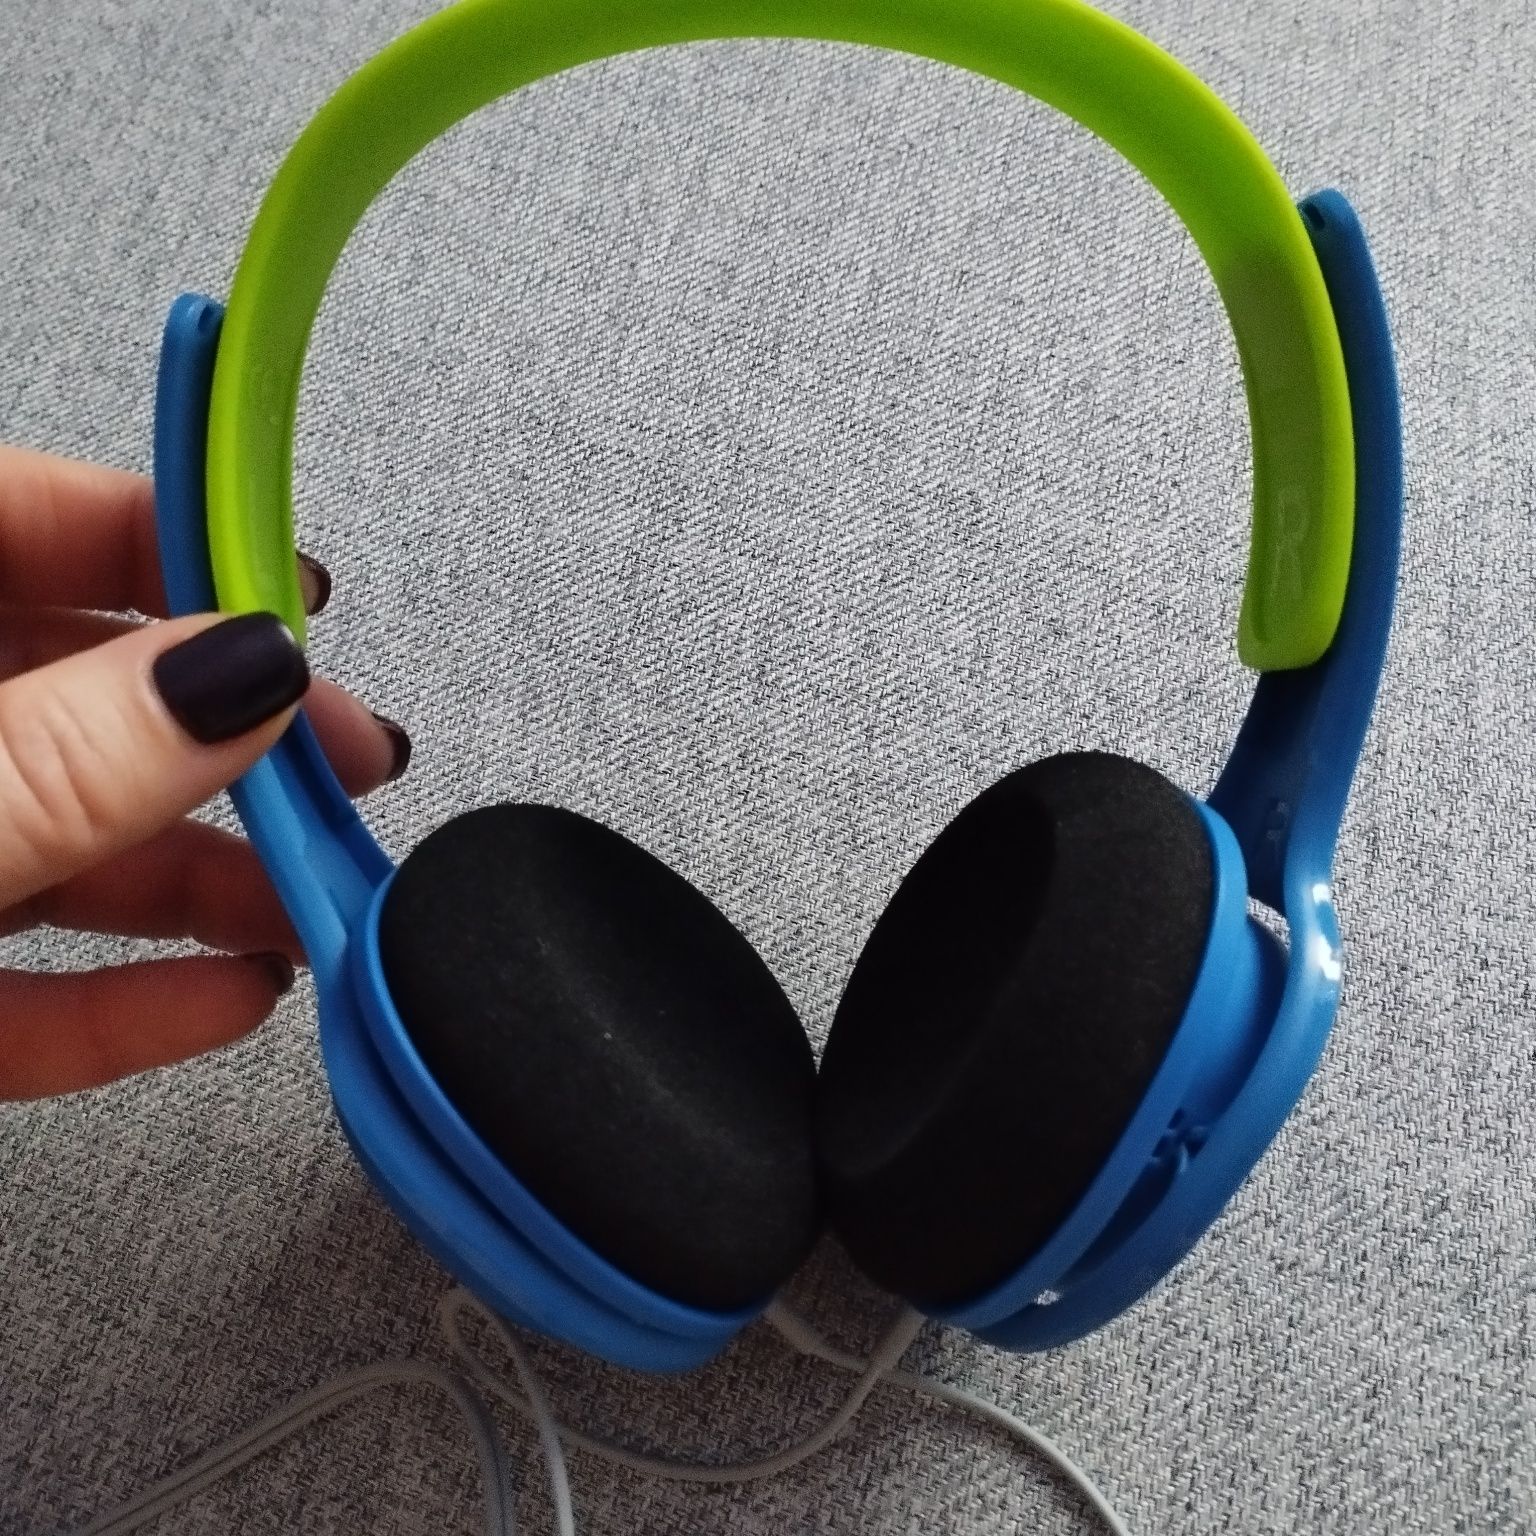 Nowe słuchawki Philips dla dziecka